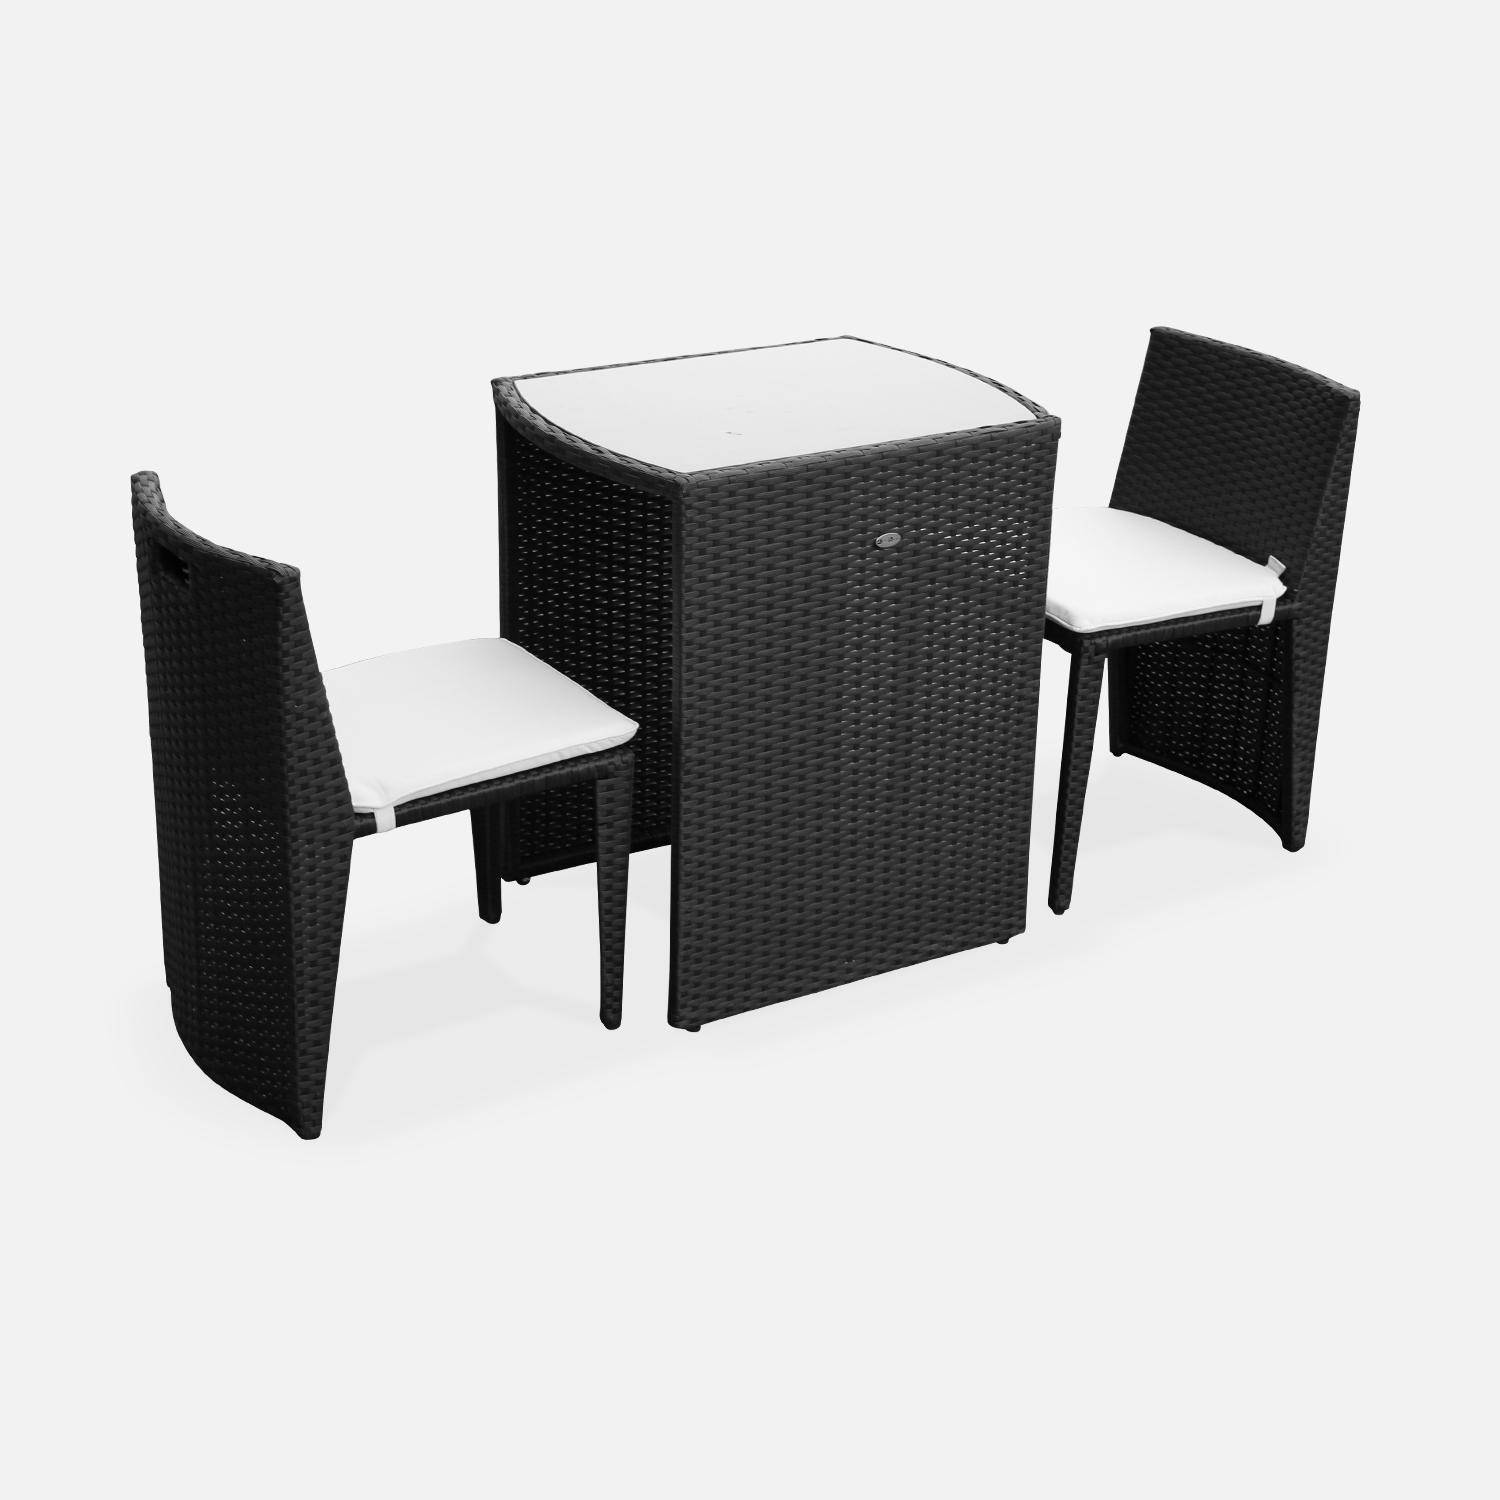 Gartentisch aus Kunststoffrattan - Doppio - Schwarz, ecrufarbene Kissen - 2 Plätze, zusammenschiebbar für Balkon und Terrasse Photo1